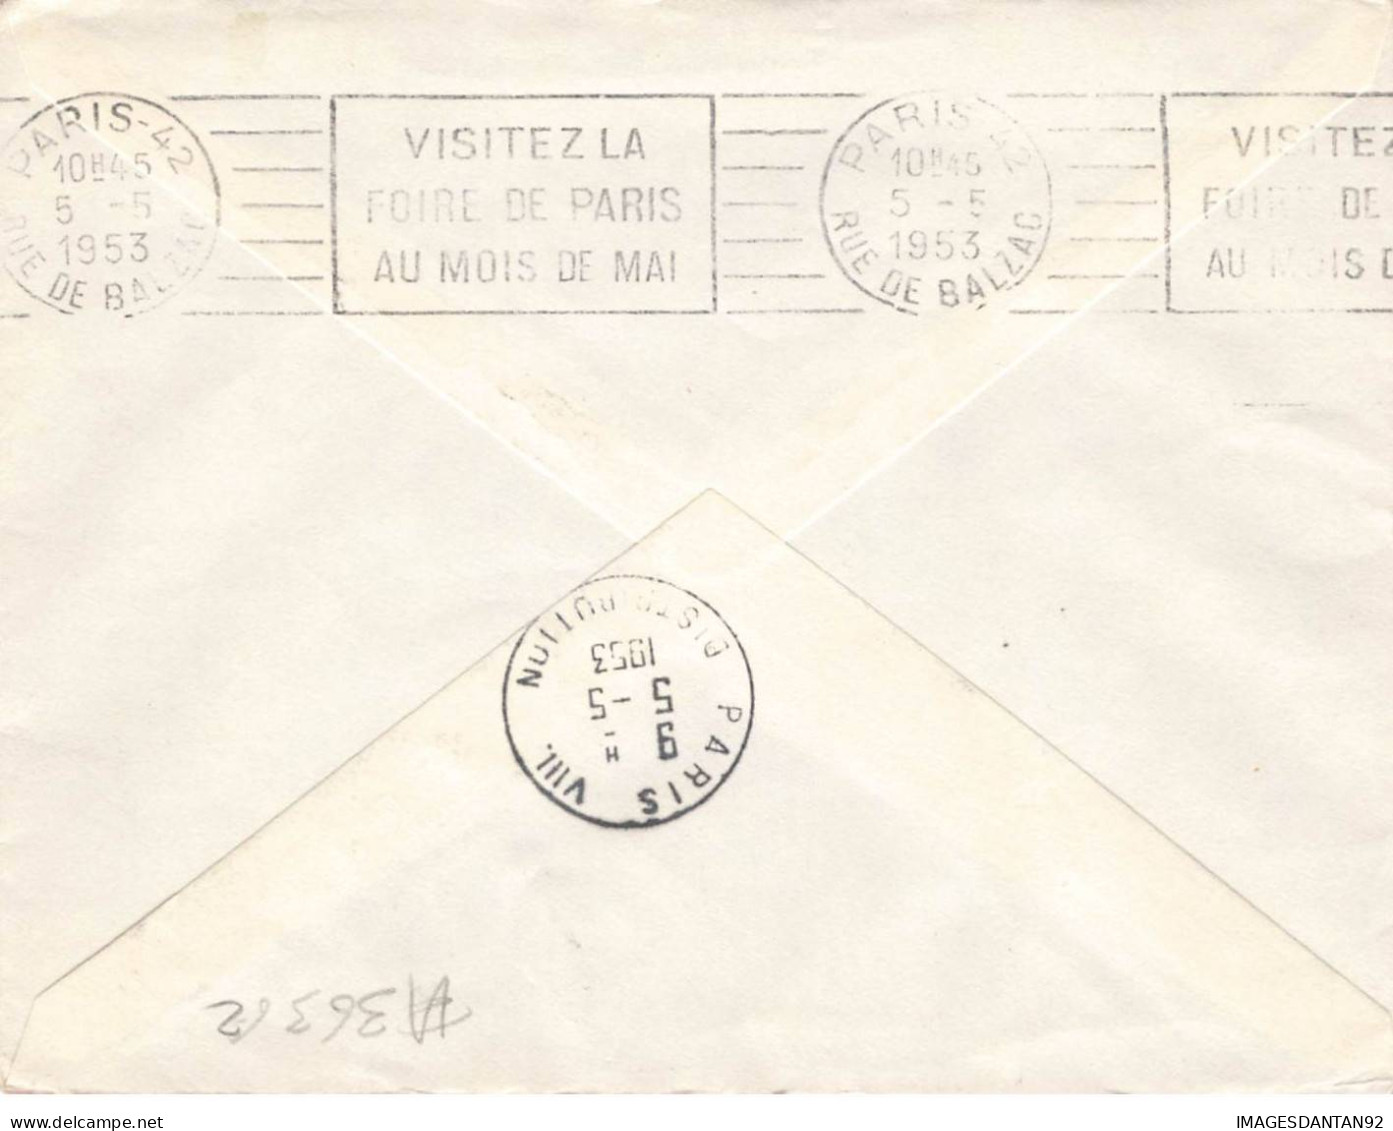 FRANCE #36362 1 ERE LIAISON AERIENNE DE NUIT MONTPELLIER PARIS 1953 - Storia Postale